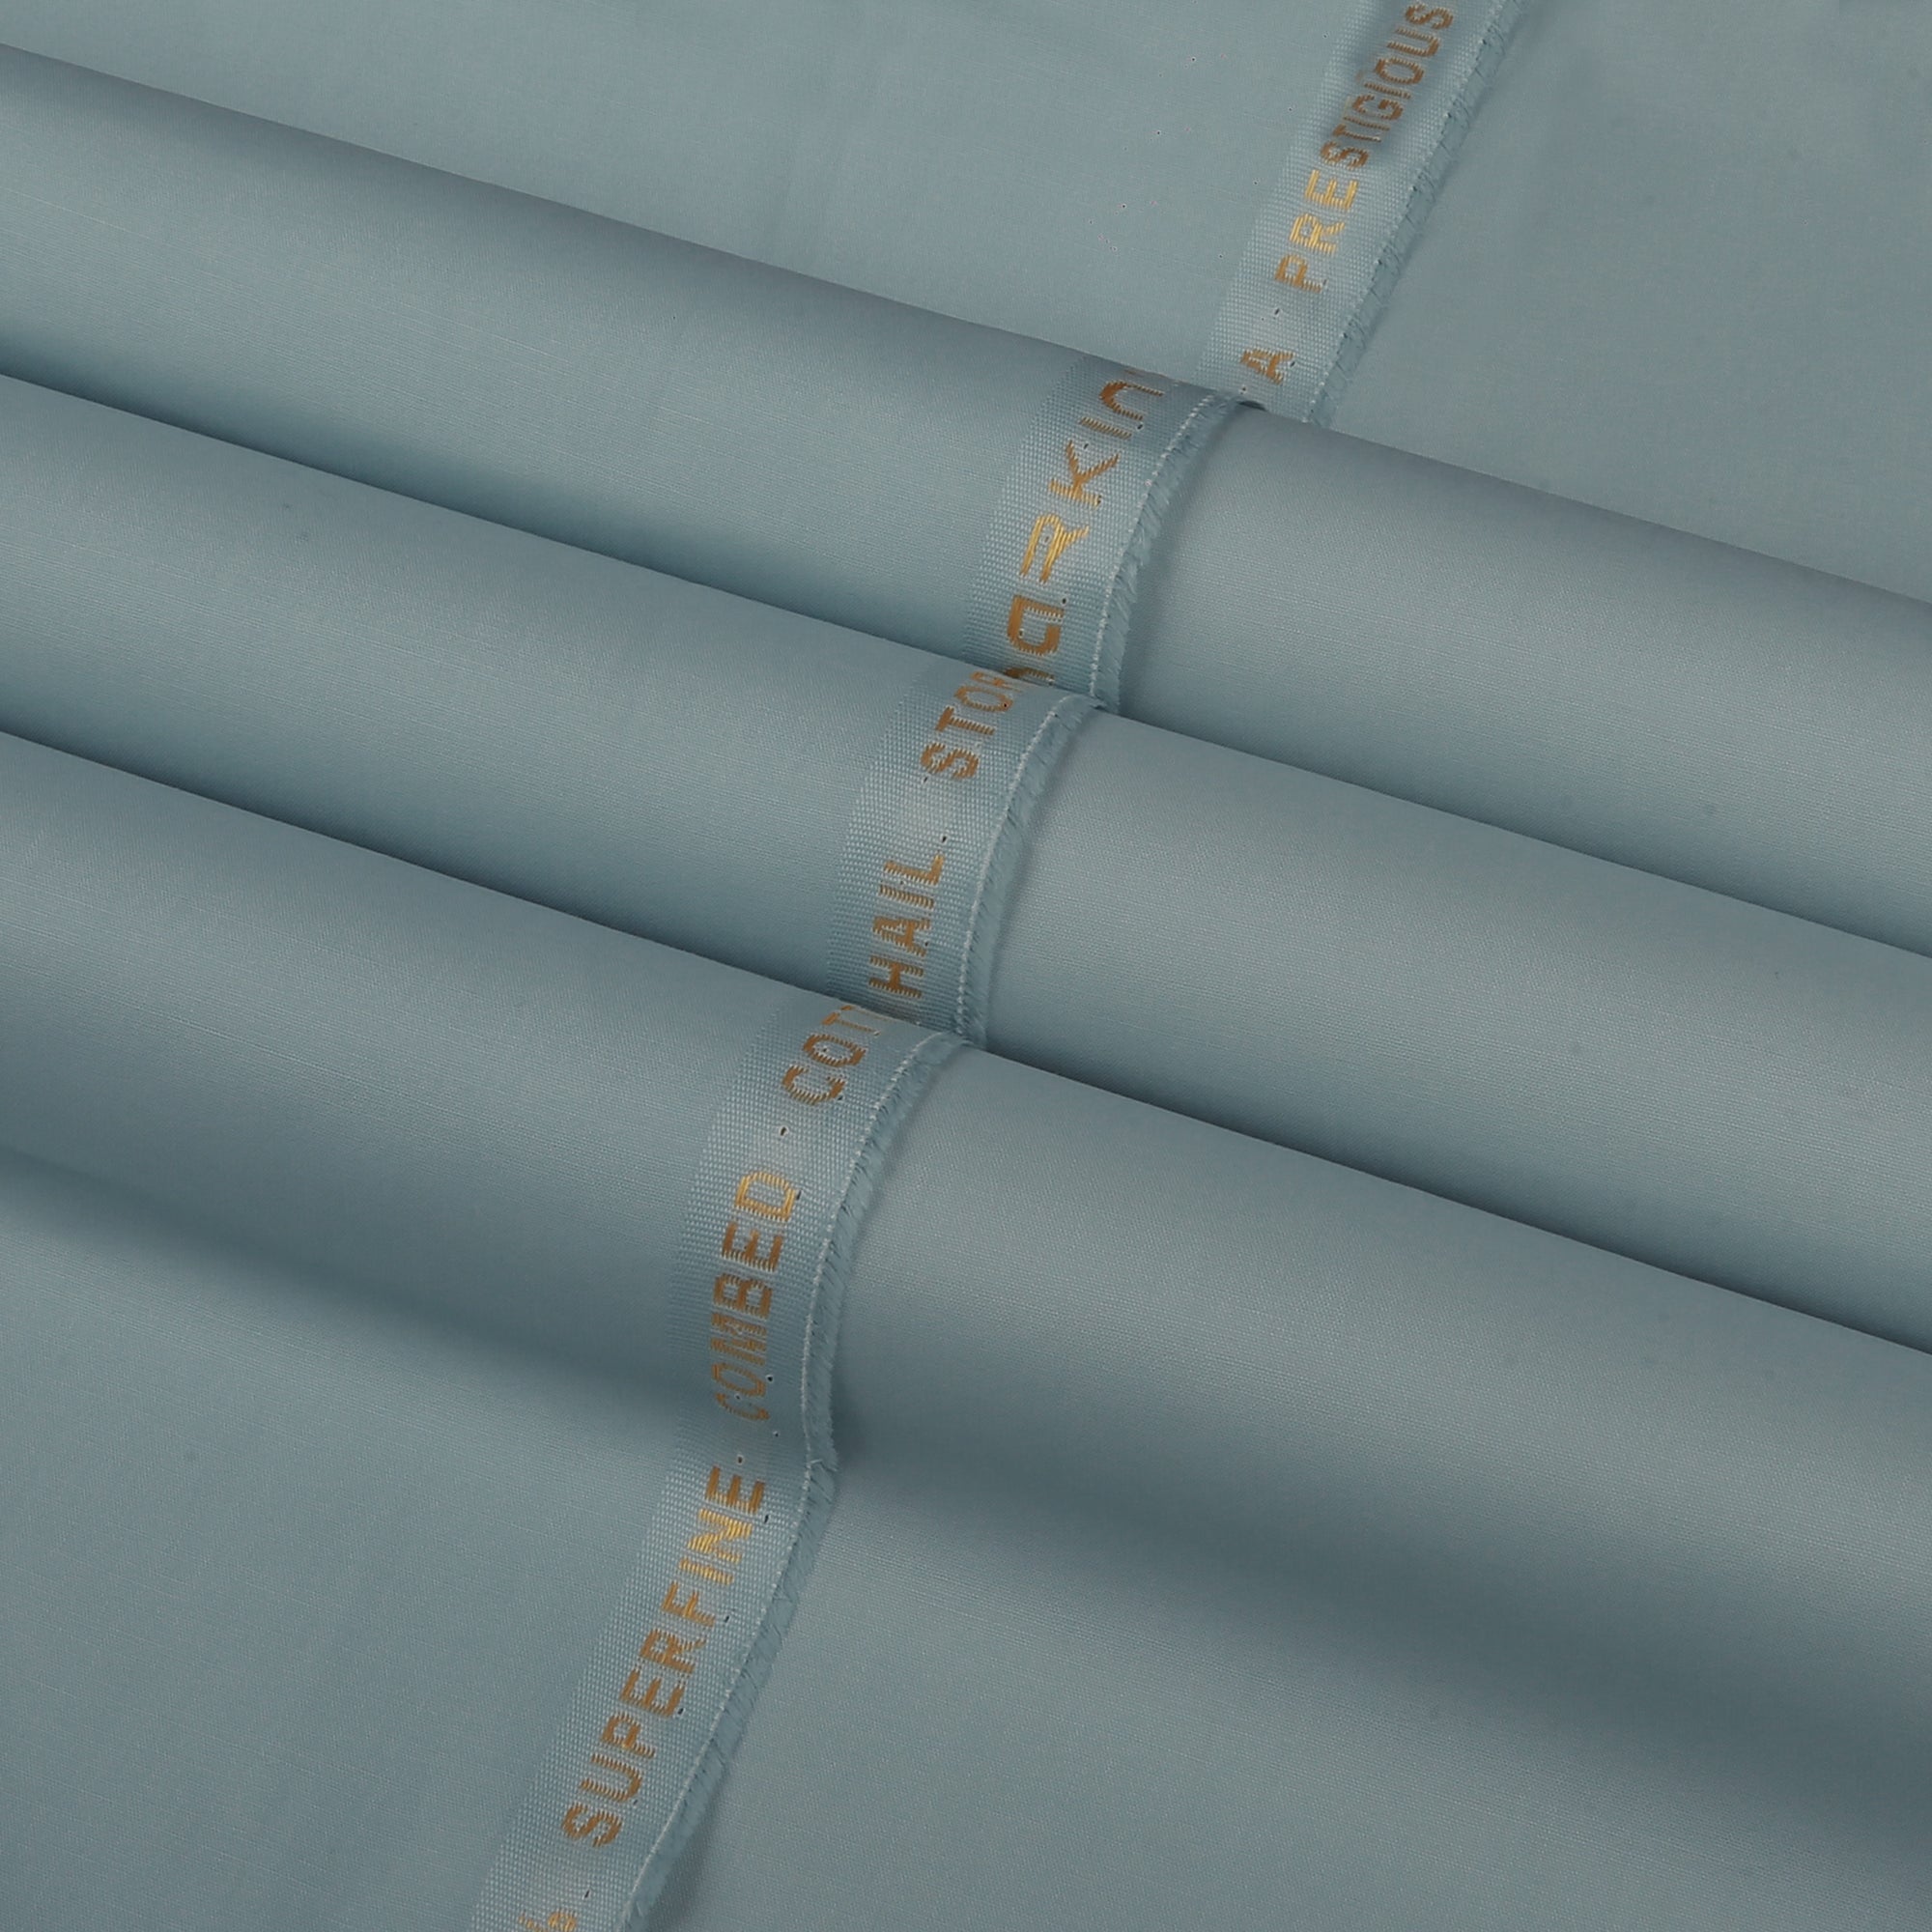 Hail Storm - Latha Cotton (4.5 Mtr) - Narkin's Textile Industries